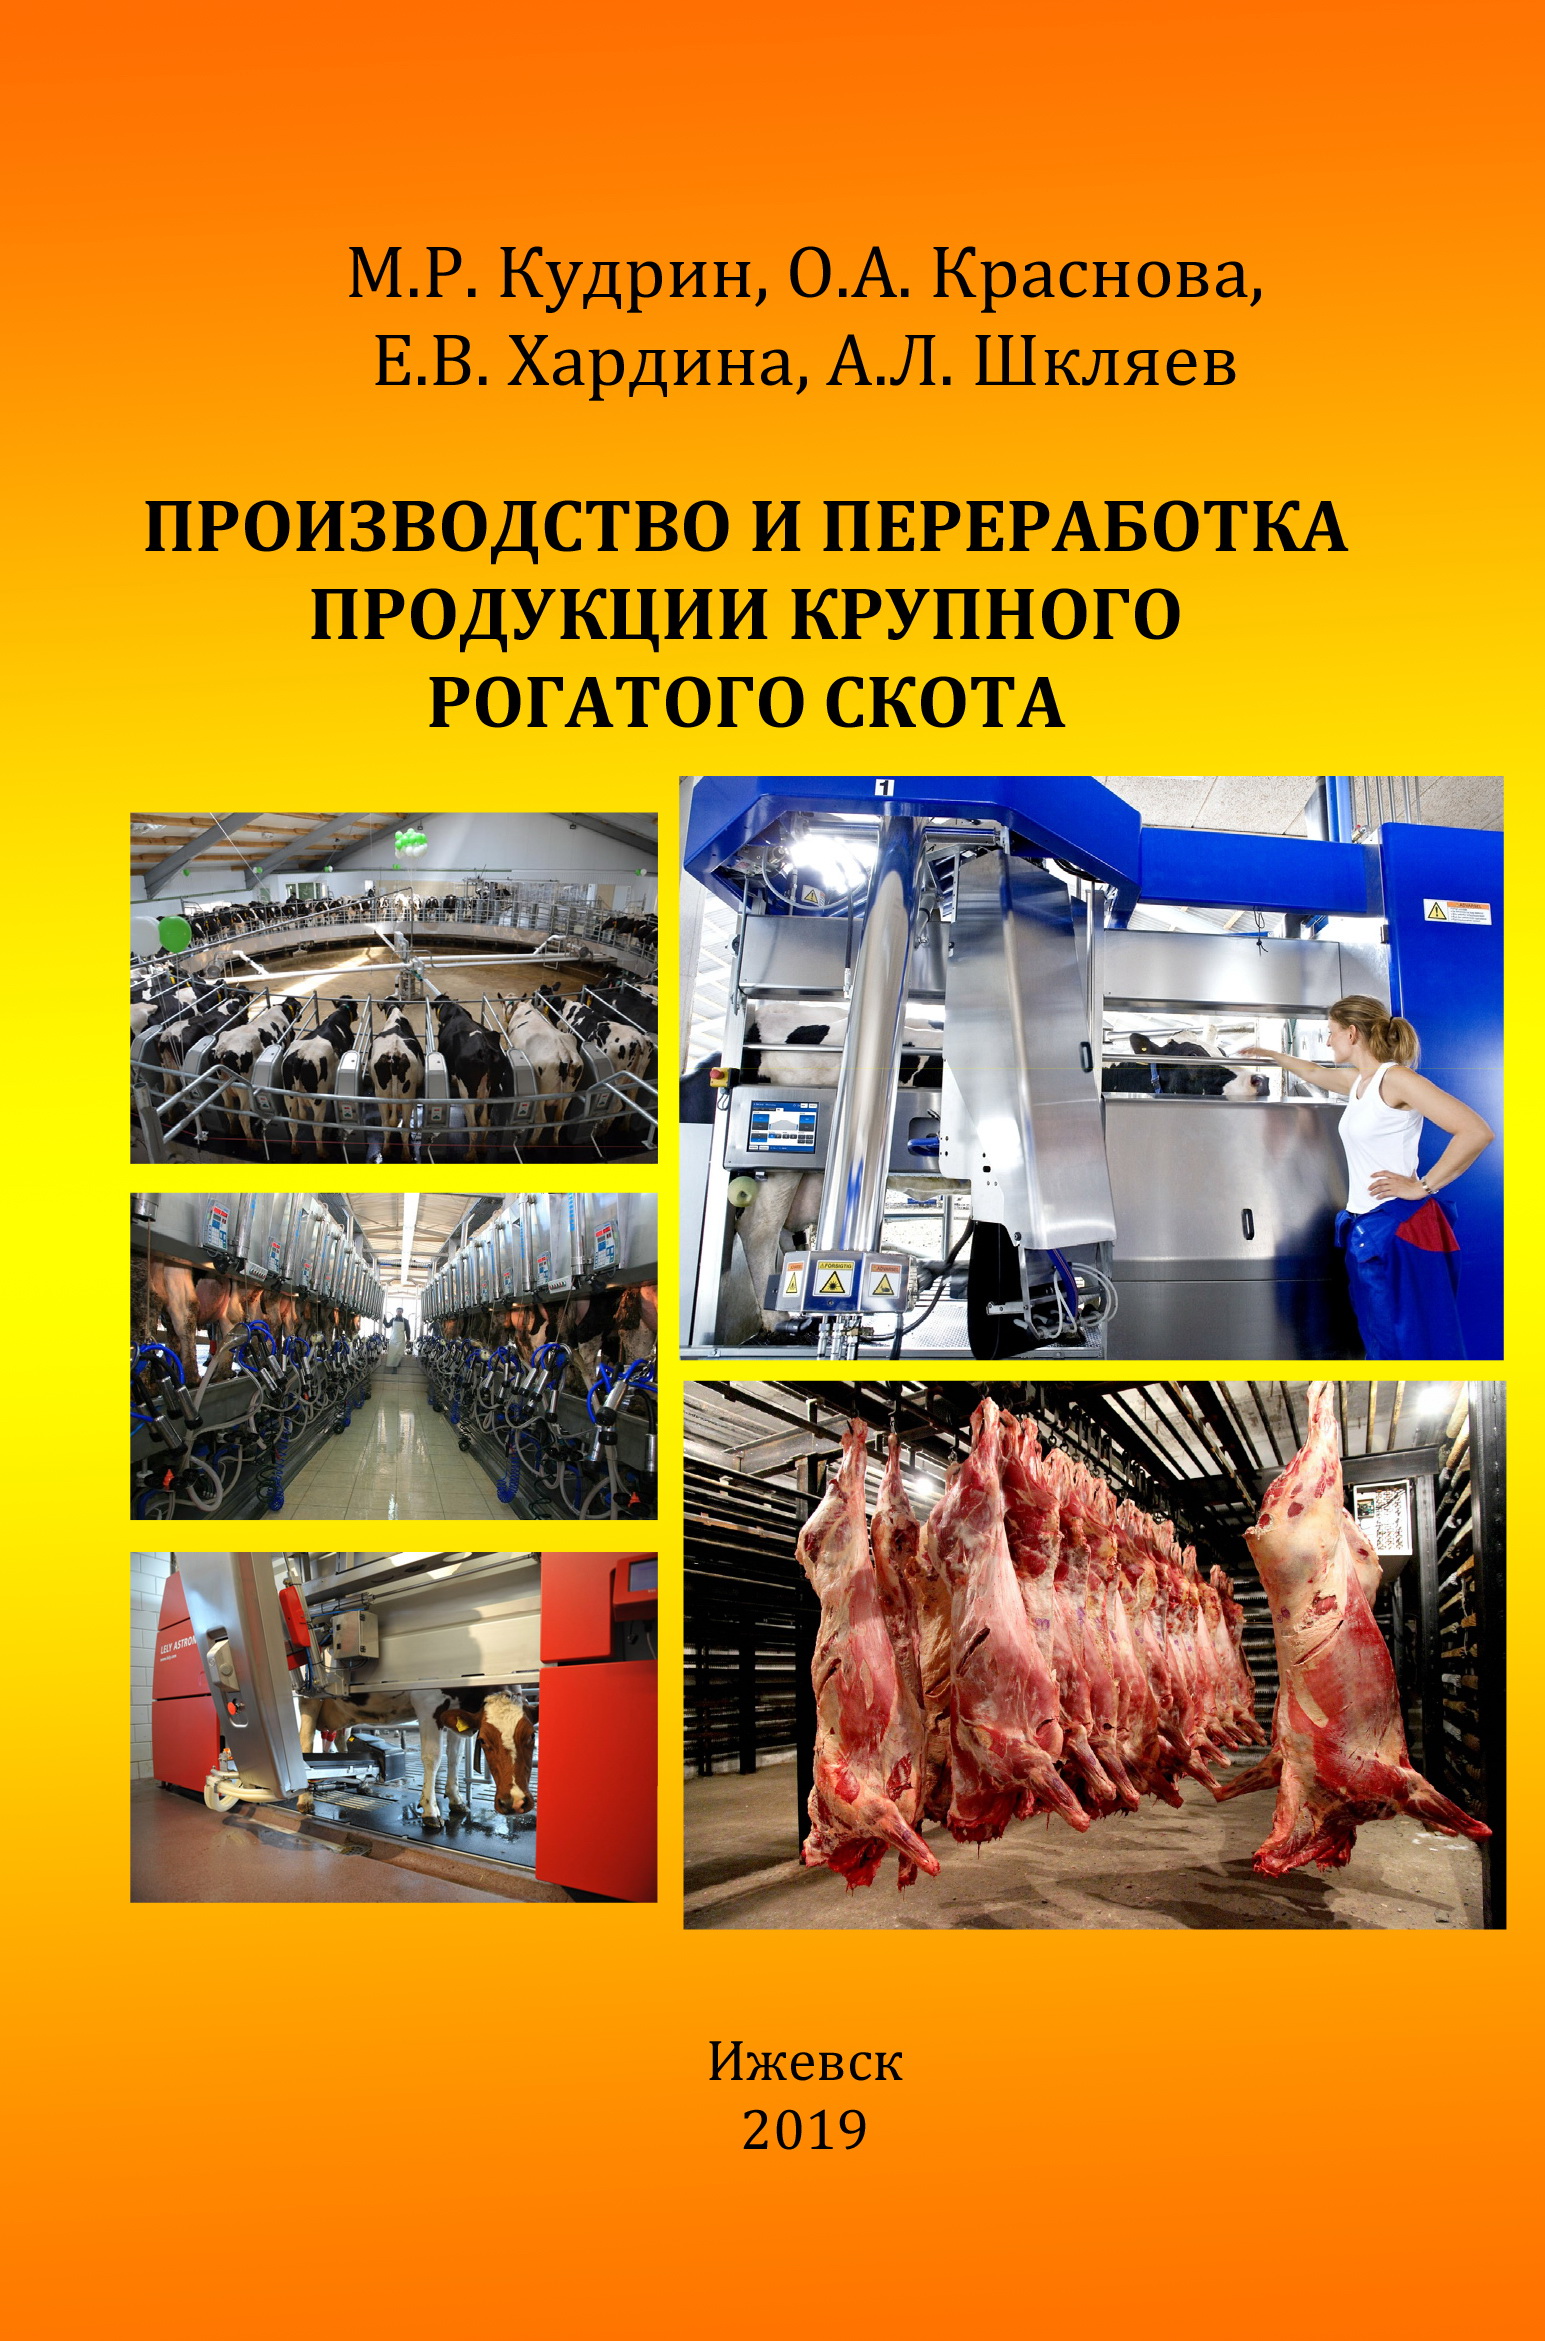 Производство и переработка продукции крупного рогатого скота